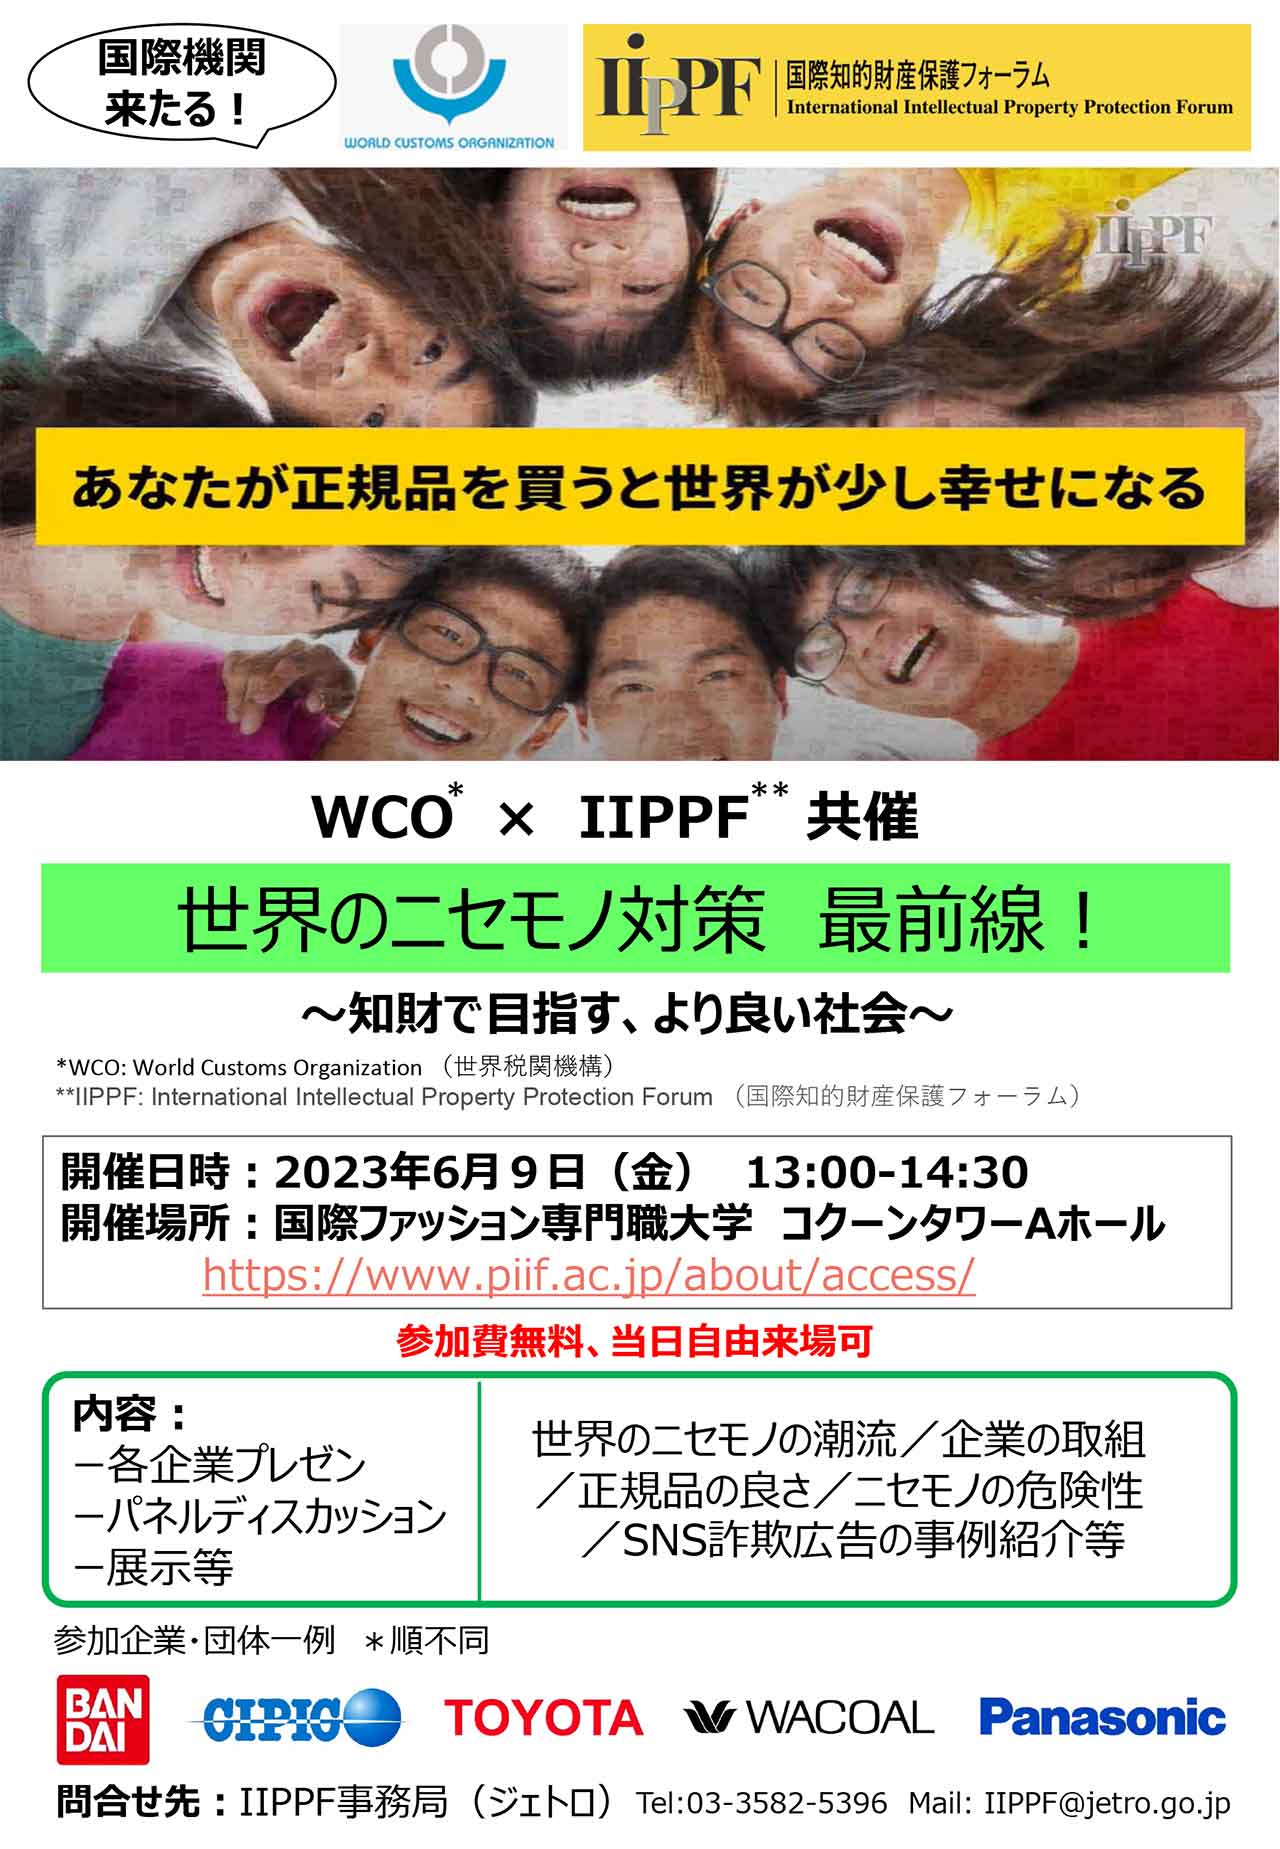 イベントポスター「WCO、IIPPF共催知財啓発イベント「世界のニセモノ対策 最前線！」